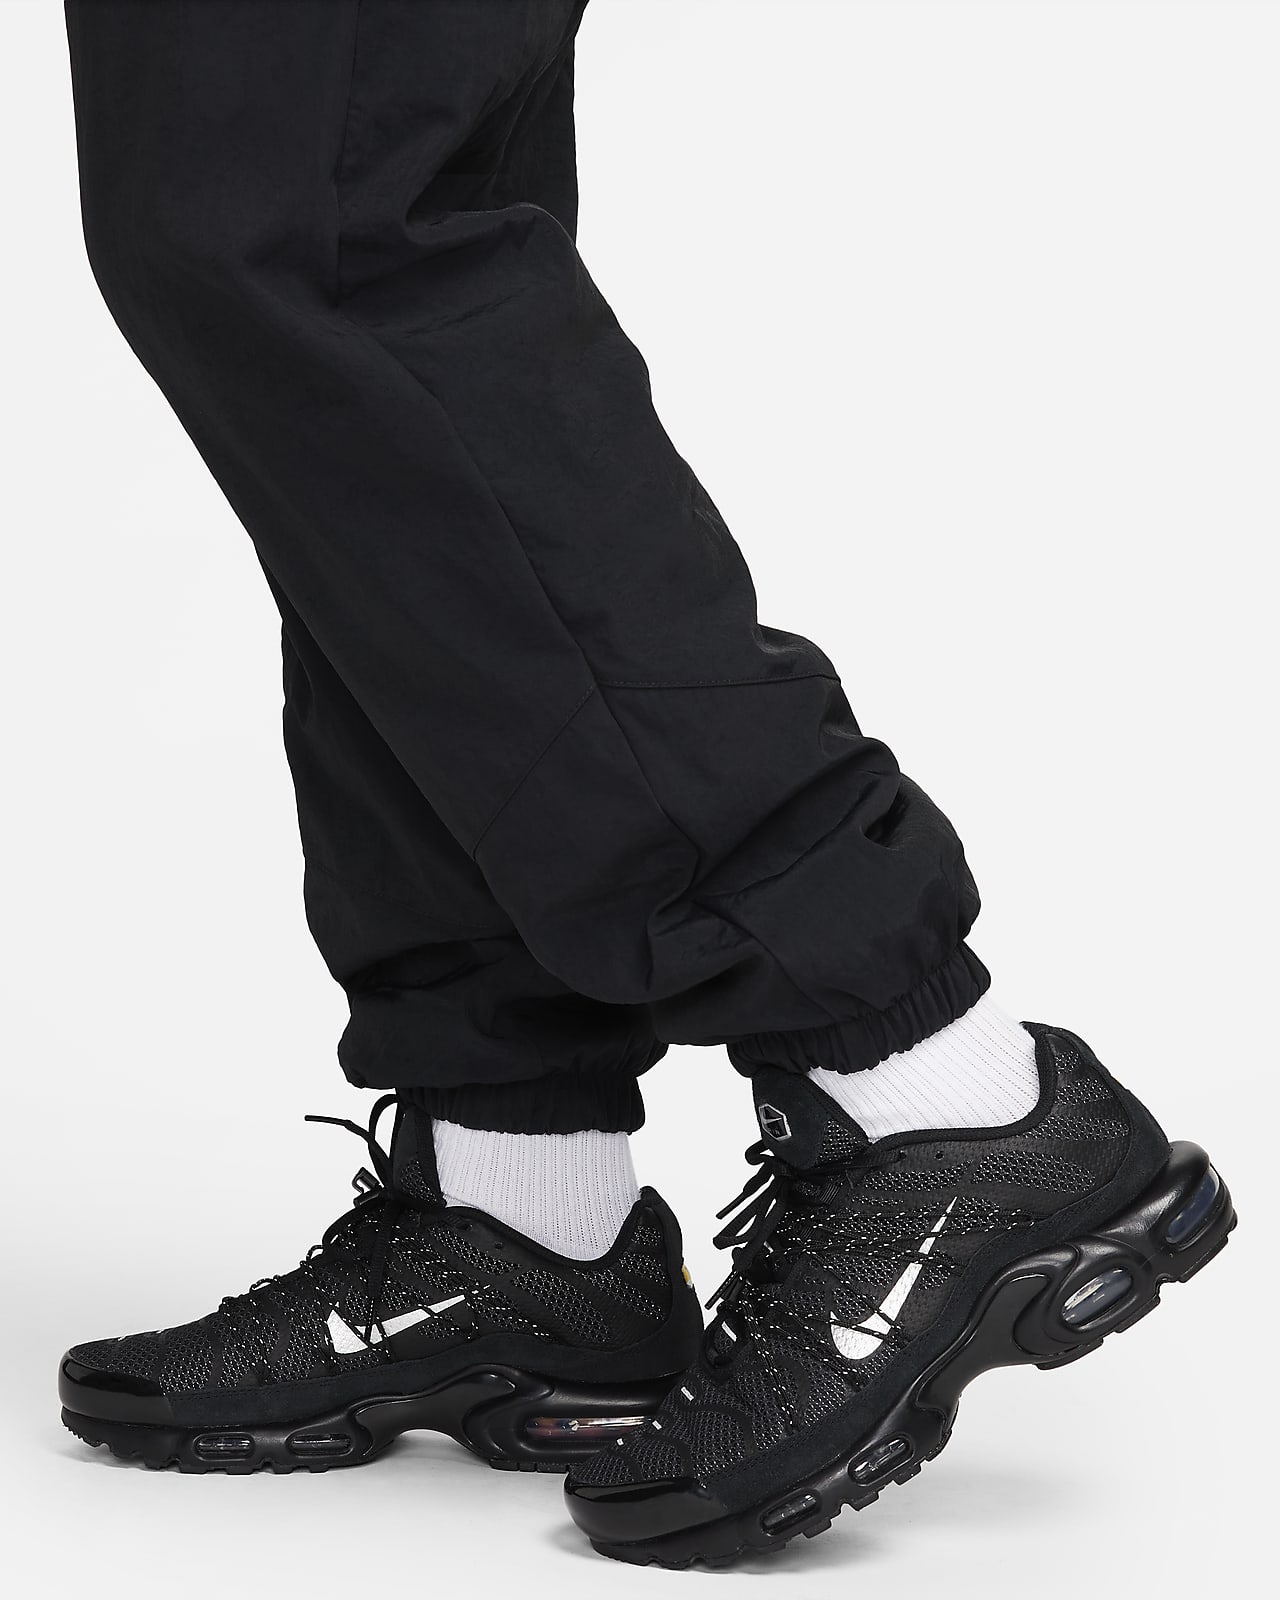 Nike Windrunner Pantalón de tejido Woven para el invierno - Hombre. Nike ES